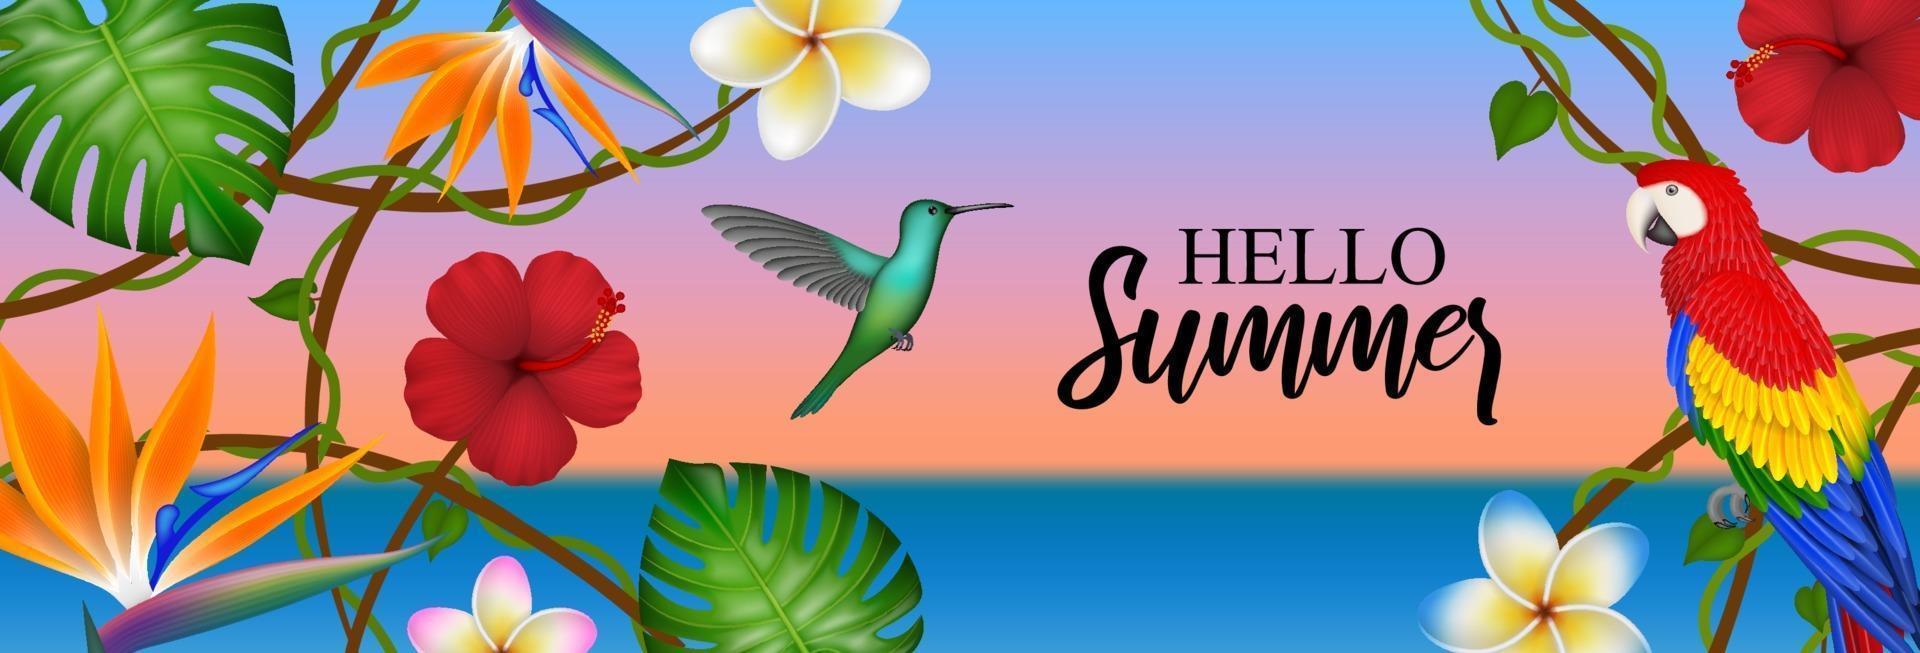 hola verano banner con flores tropicales, pájaros y hojas vector